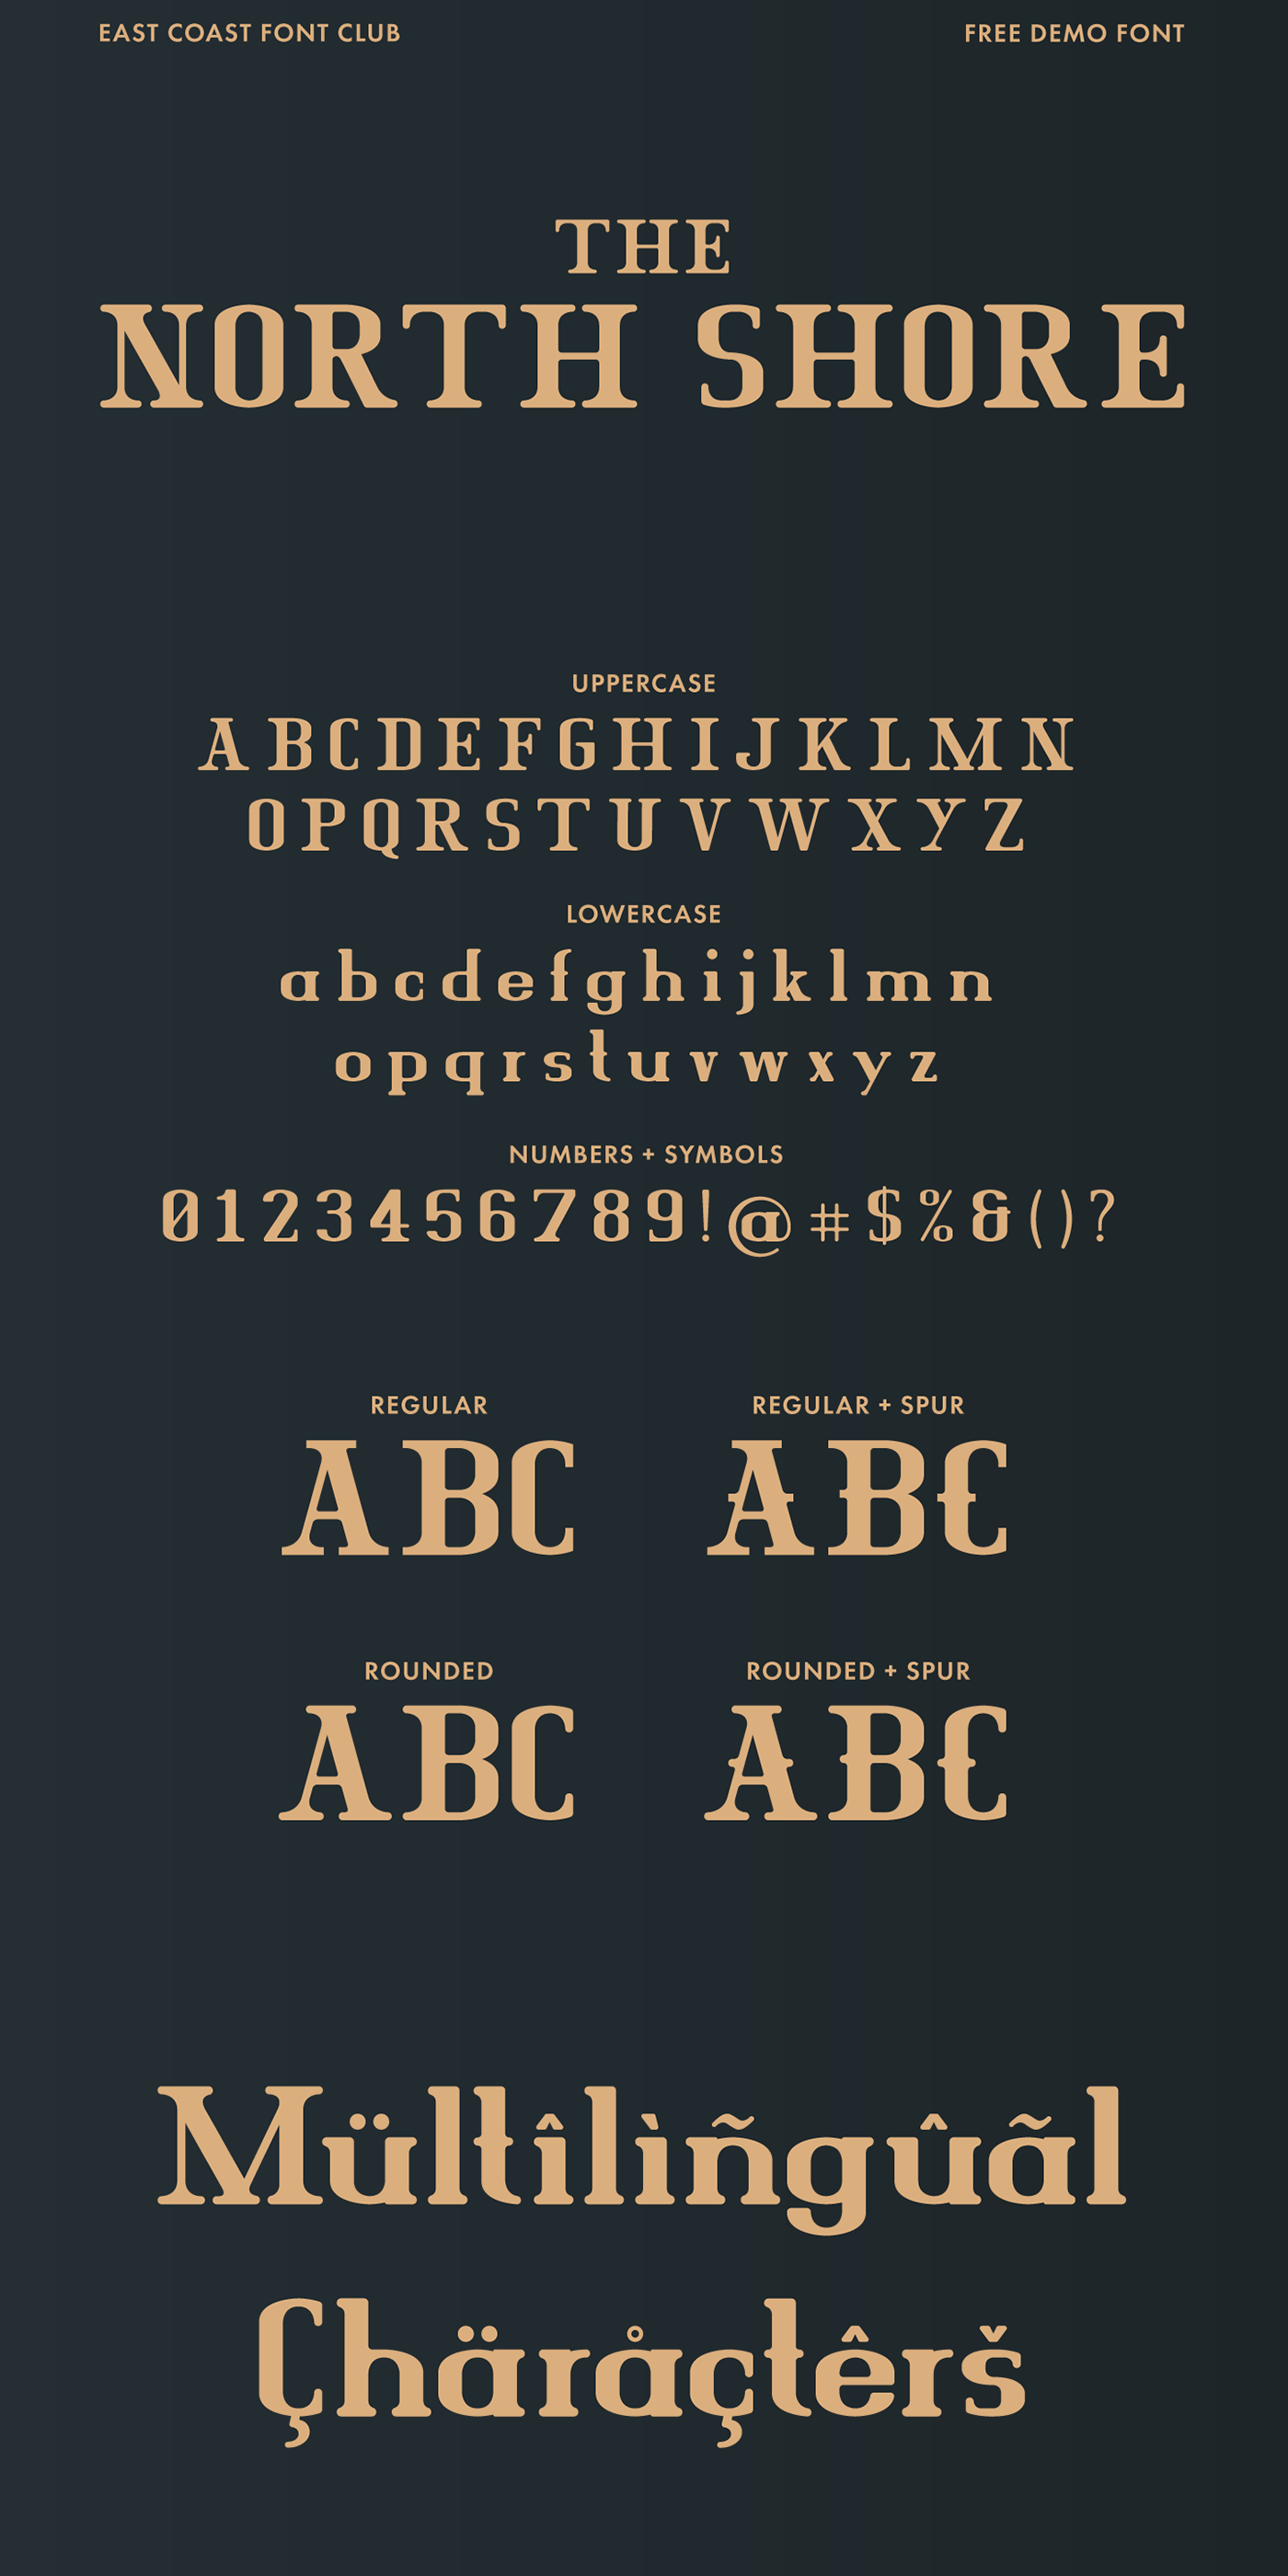 display font font free Free font freebie logo poster sans serif serif Typeface